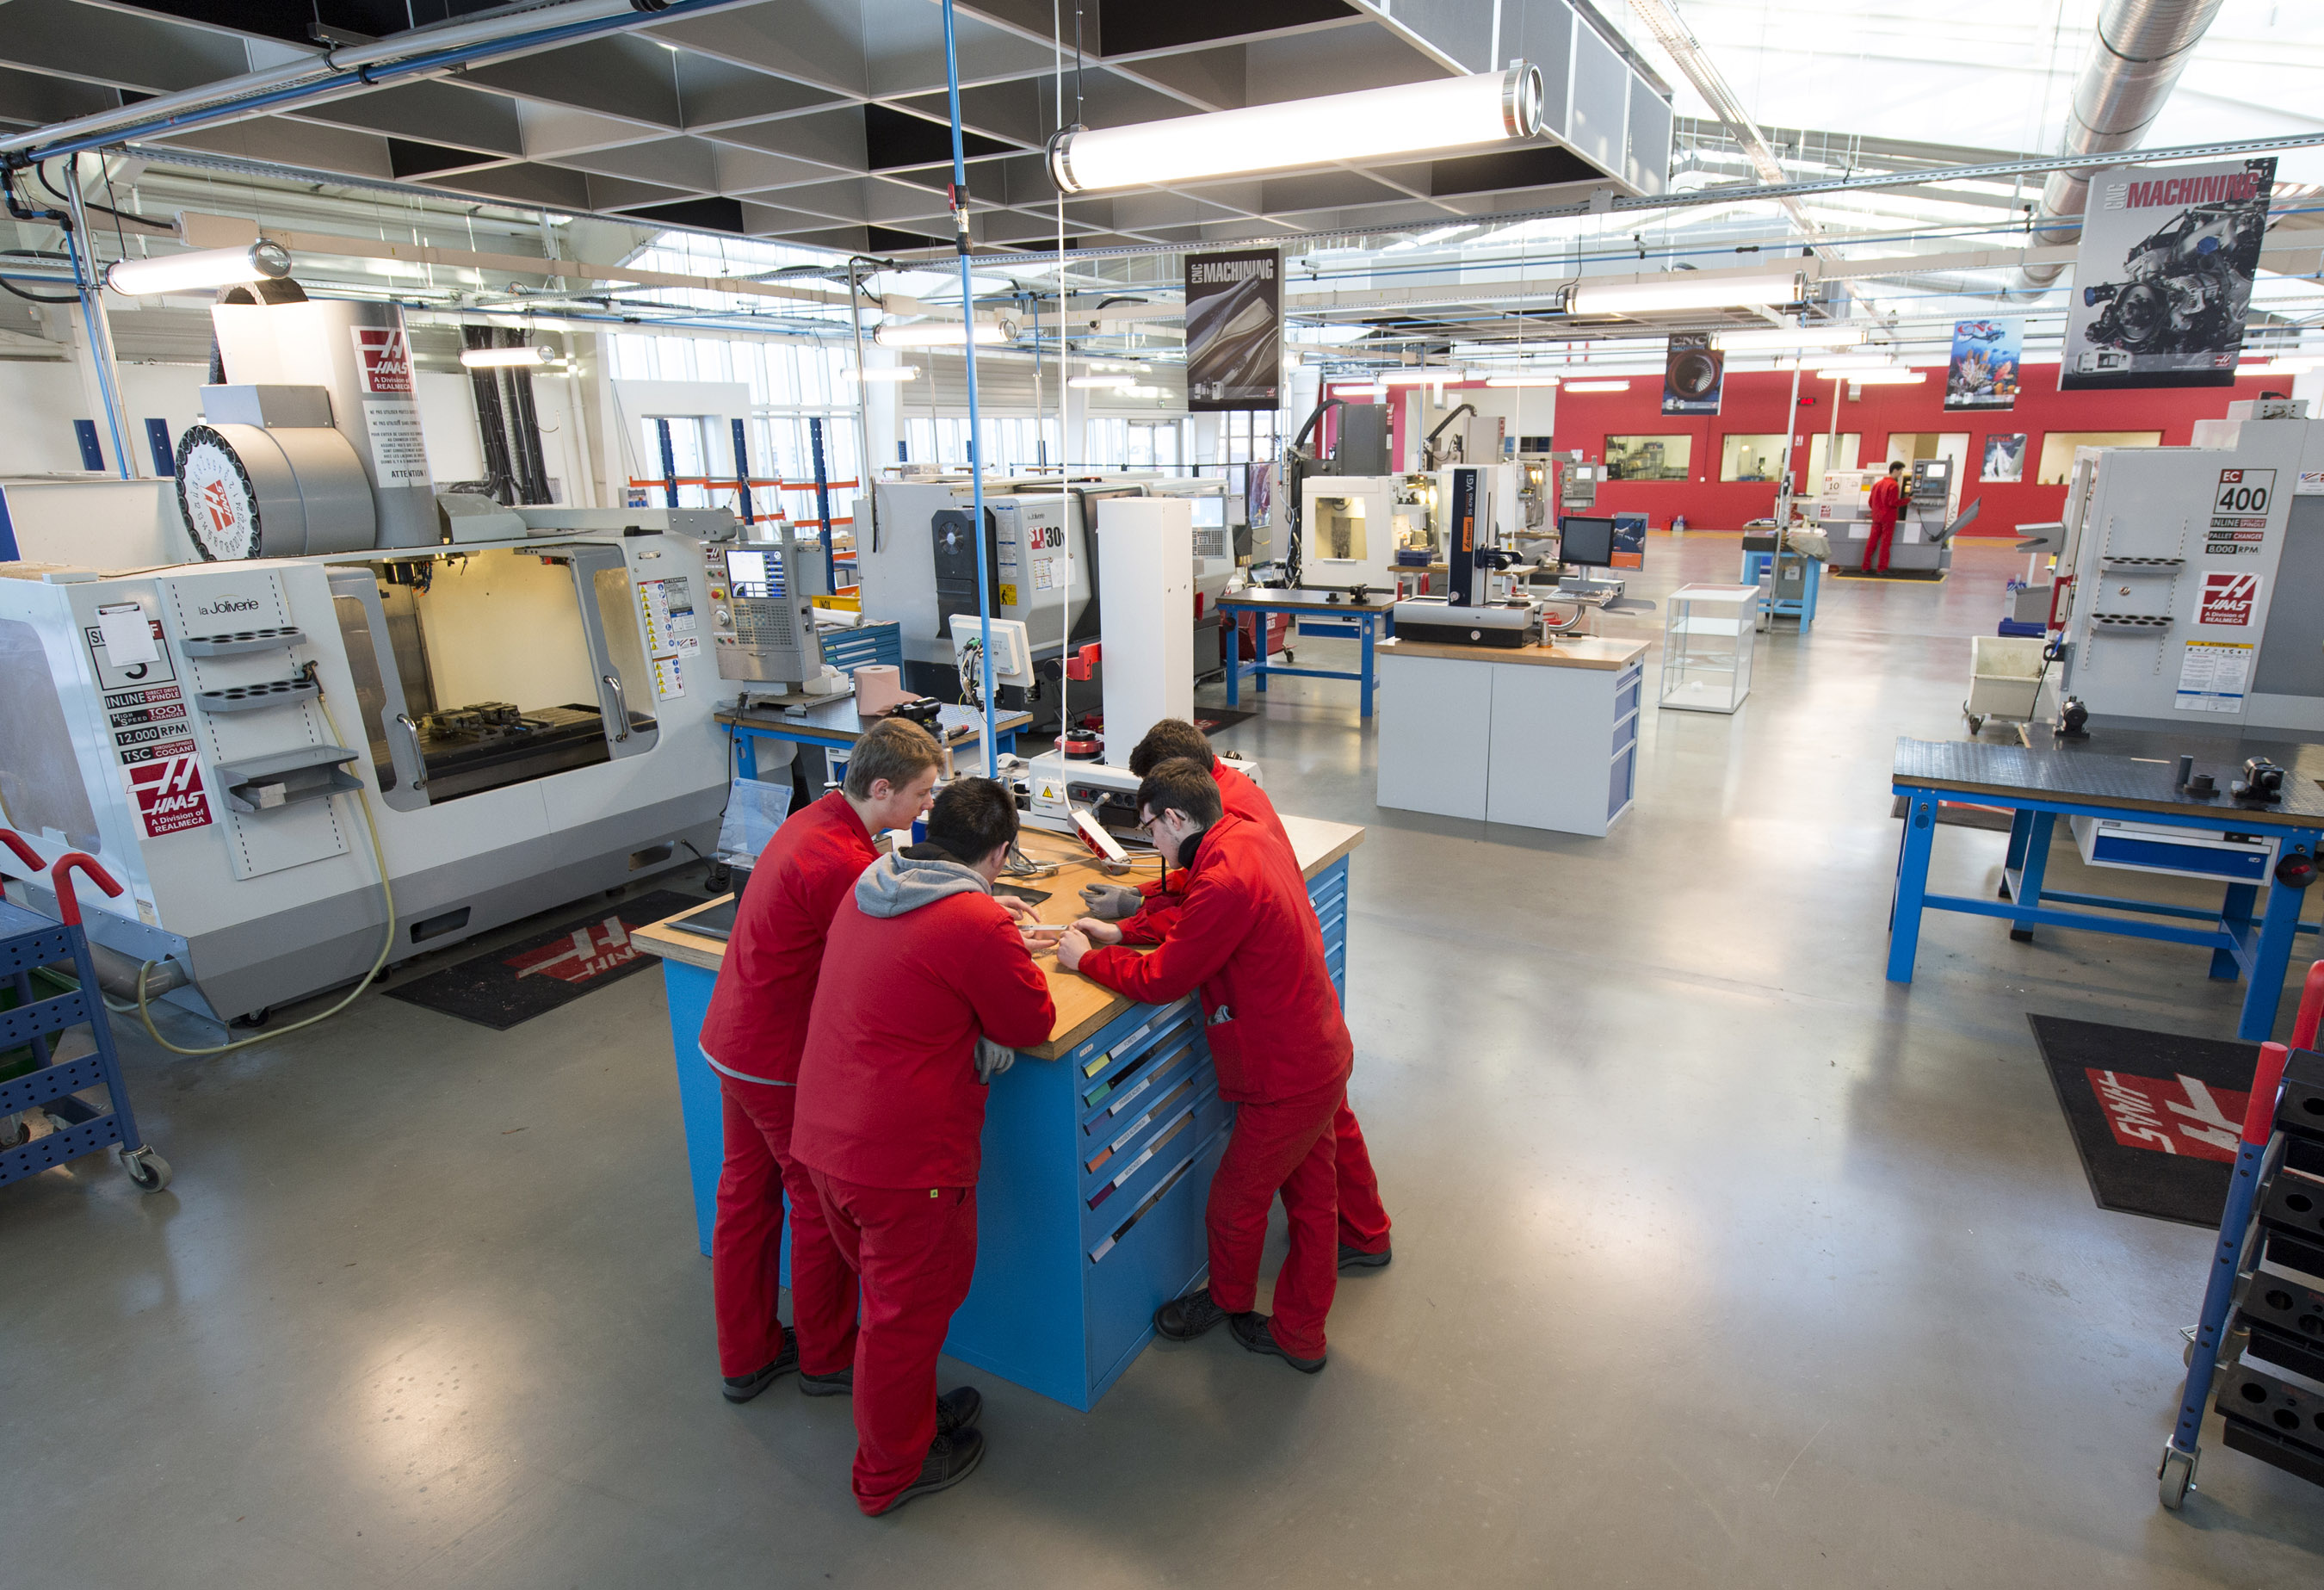 Obr. 1 V škole La Joliverie sa nachádza desať strojov Haas vrátane horizontálneho obrábacieho centra EC400 a sústruhu ST-30Y s osou Y a poháňanými nástrojmi.